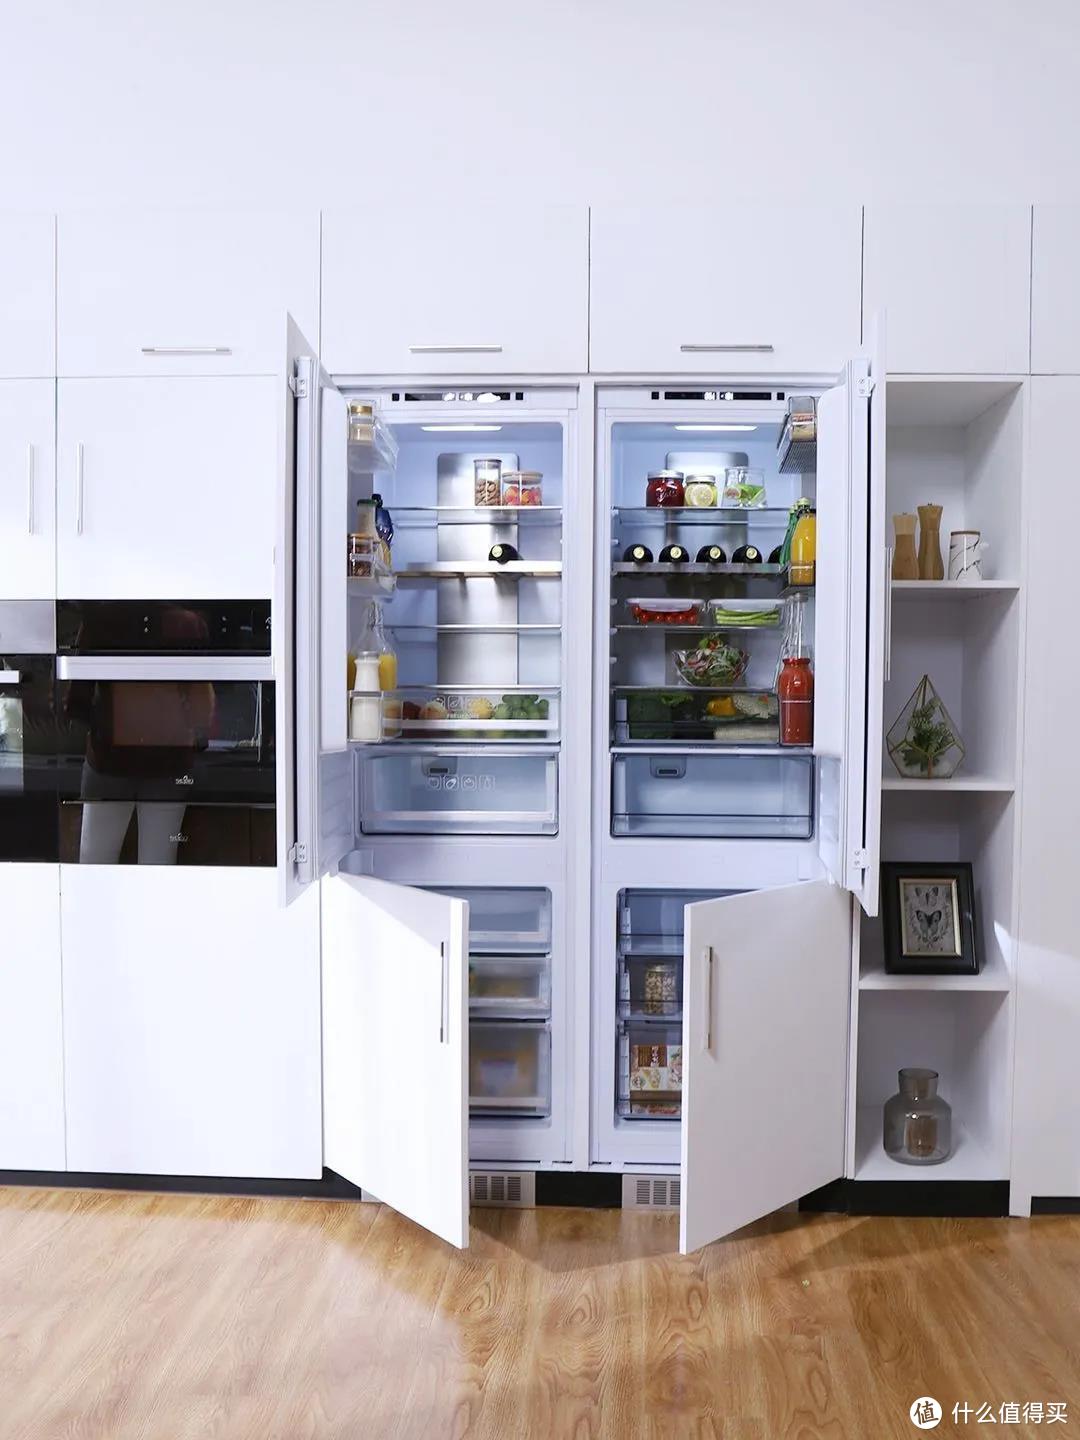 评测 | 嵌入式冰箱零度保鲜哪家好？